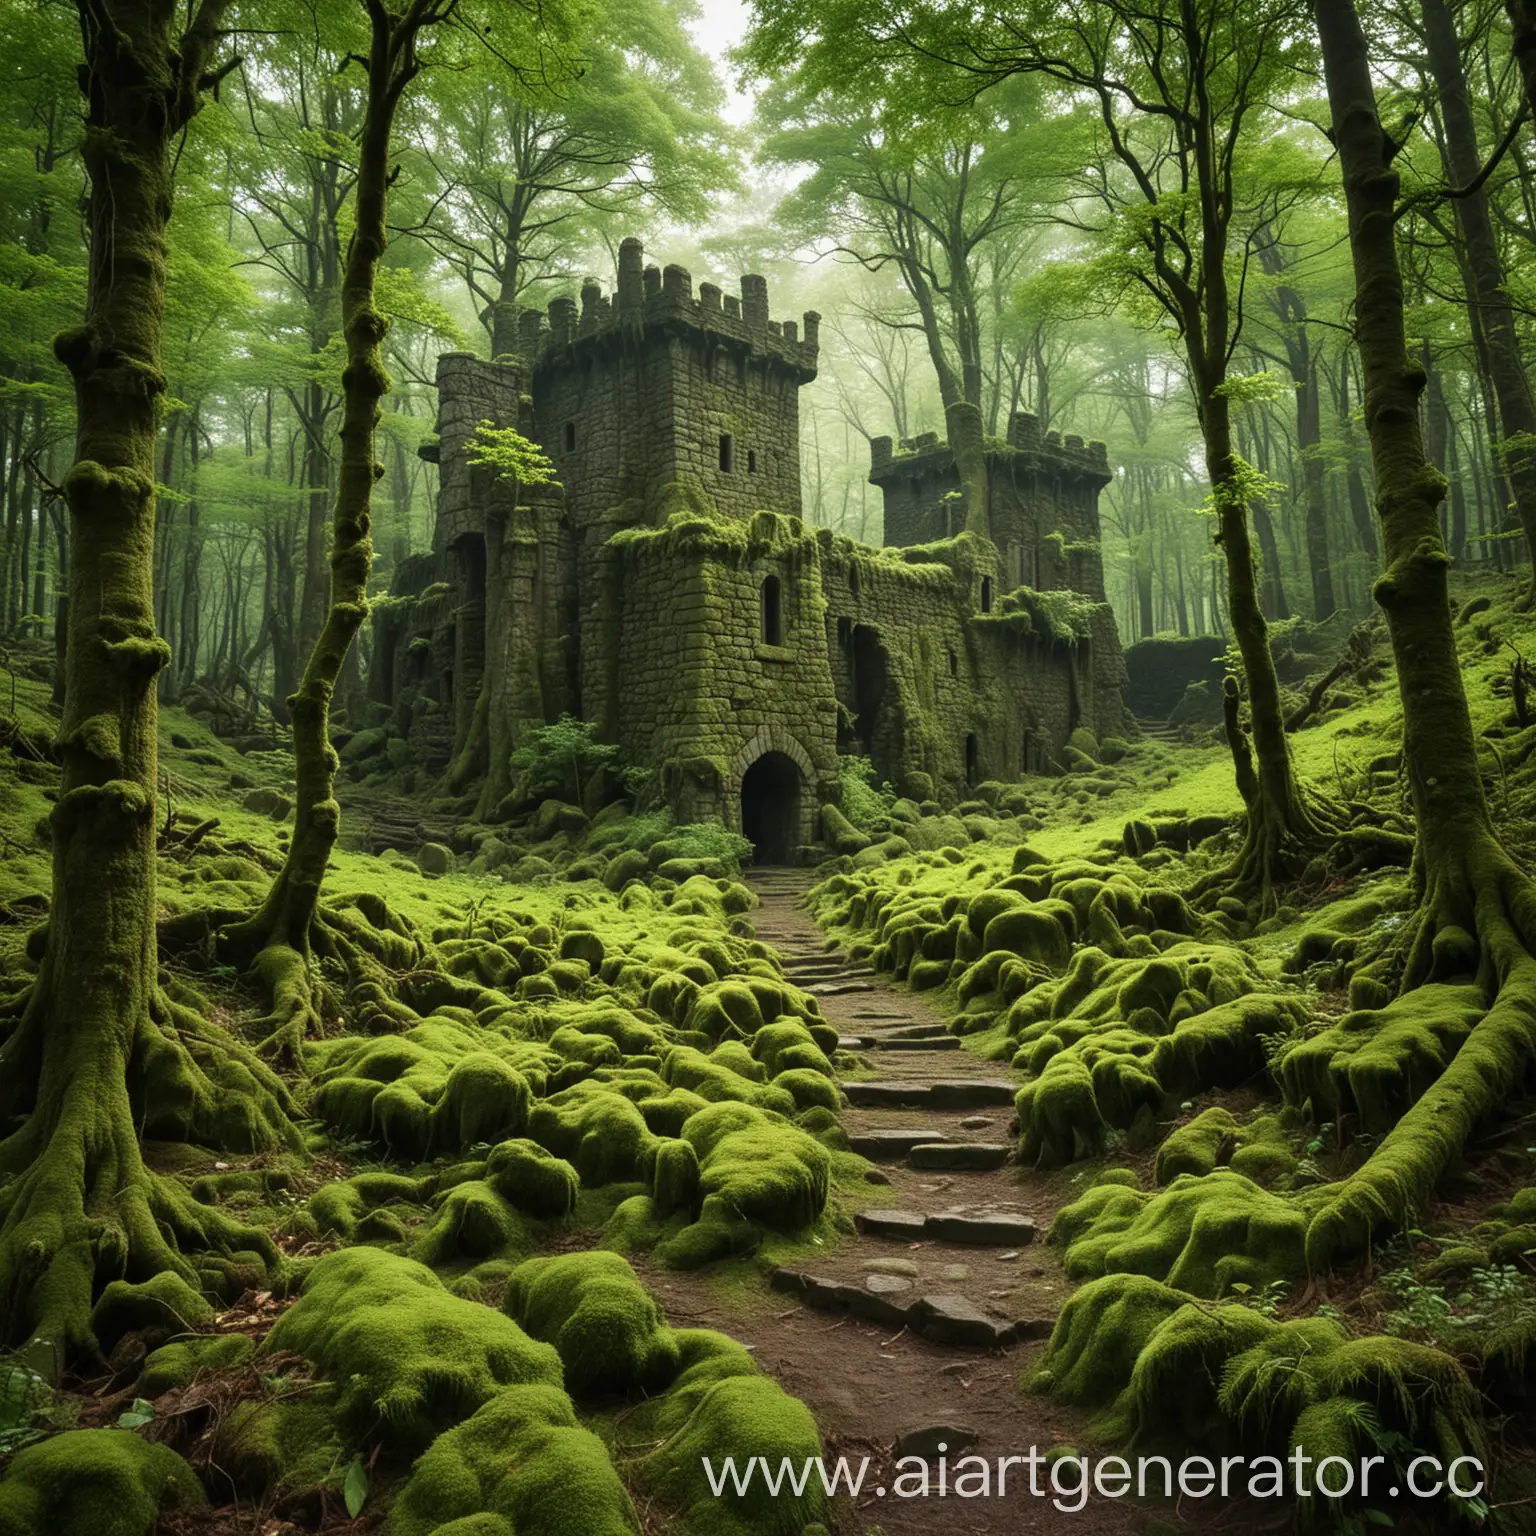 яркий зеленый лес на опушке вход в подземелье а в далеке виднеется старинный поросший мхом замок
